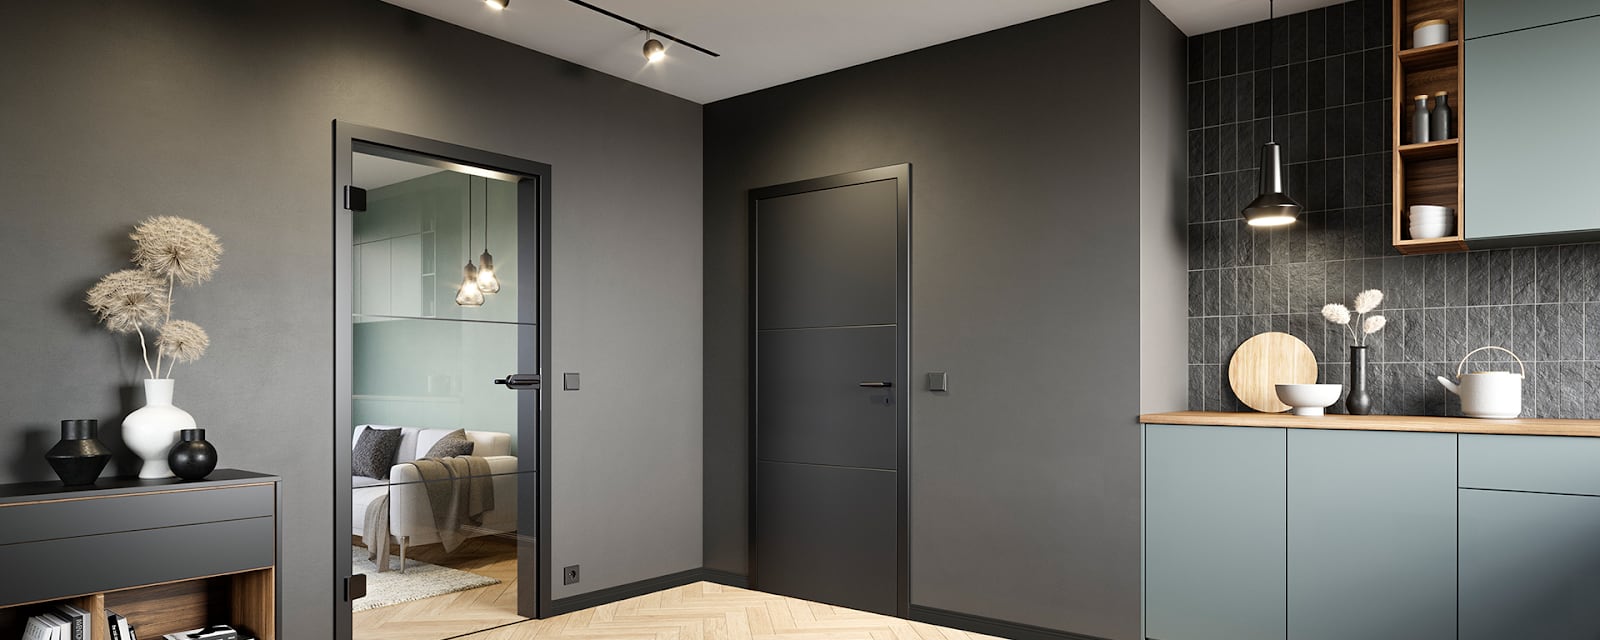 Современный дизайн интерьера: темные стены, кухонный уголок, стеклянные двери, декоративные вазы.